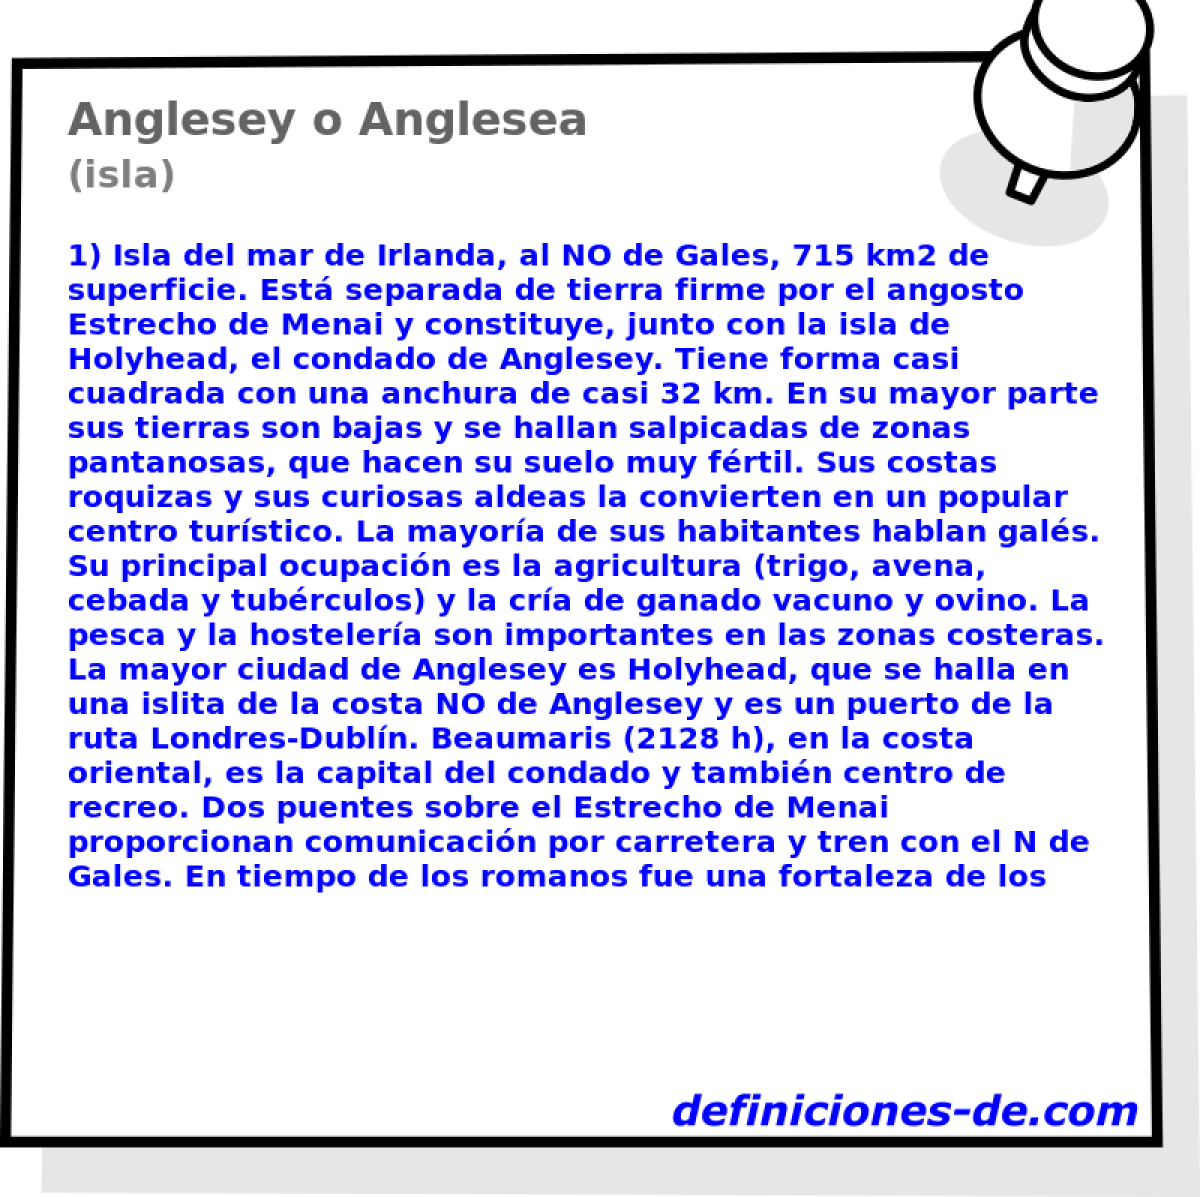 Anglesey o Anglesea (isla)